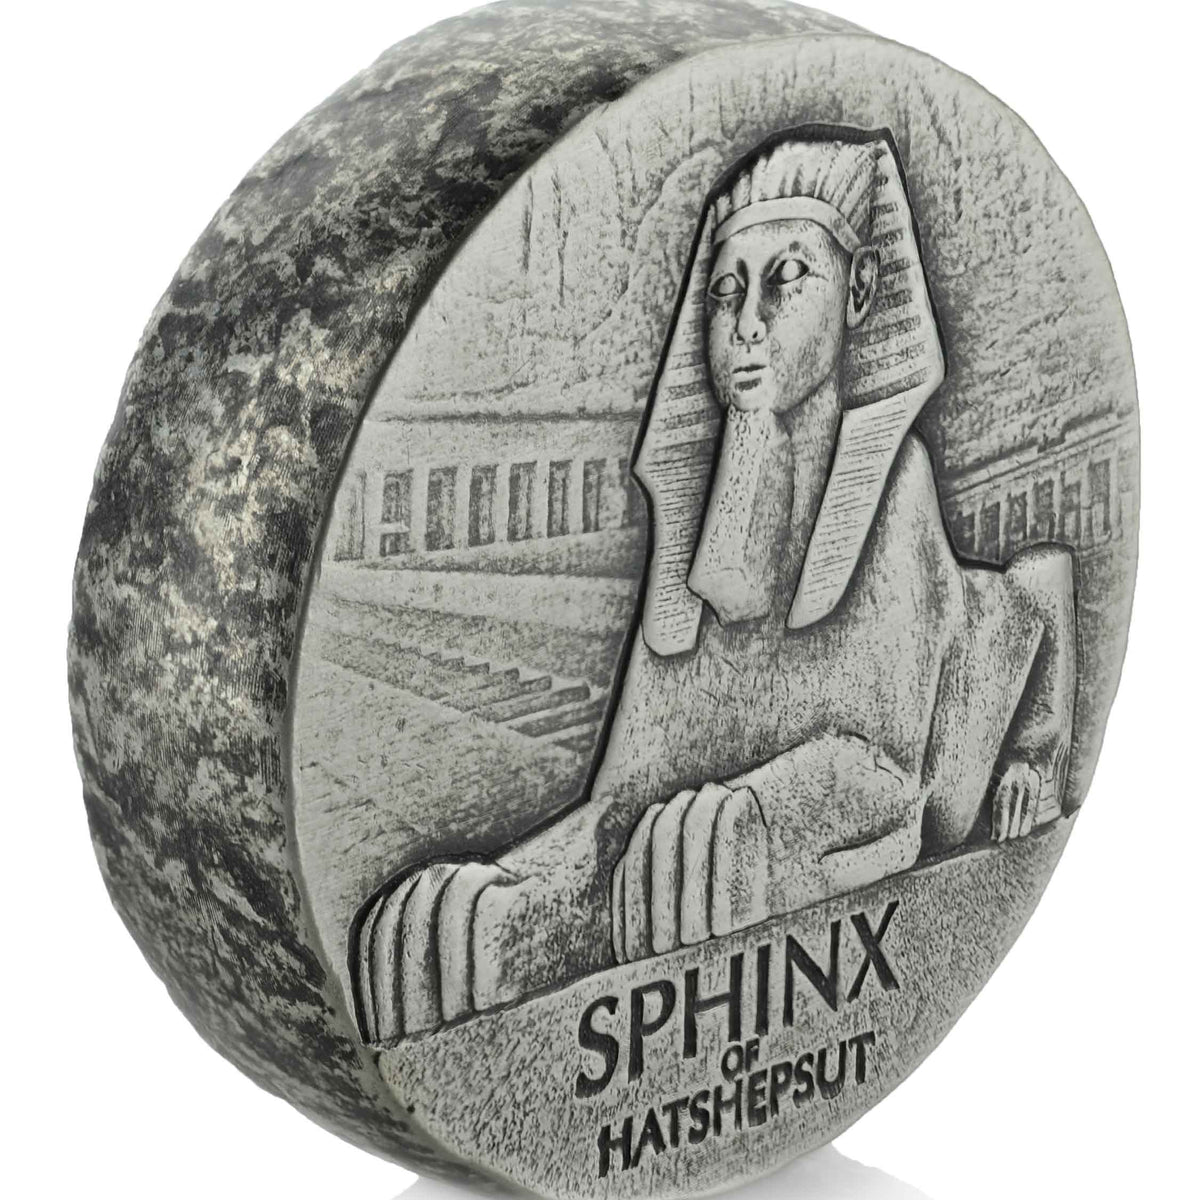 2019 Republic of Chad 5 oz Silver Sphinx of Hatshepsut (BU)